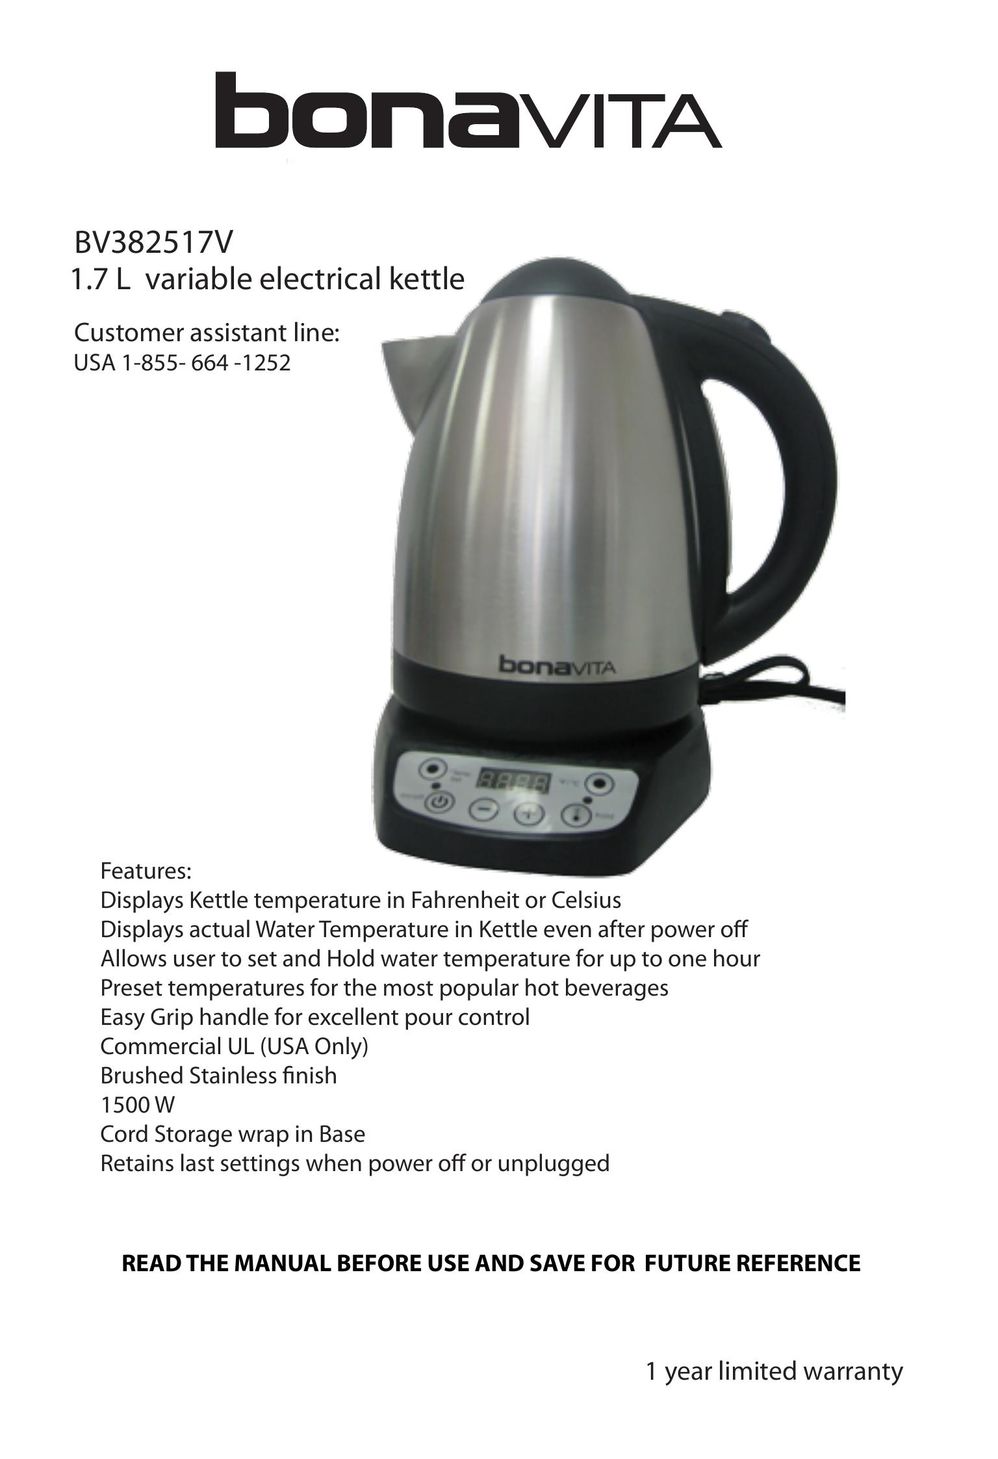 Bonavita BV382517V Hot Beverage Maker User Manual